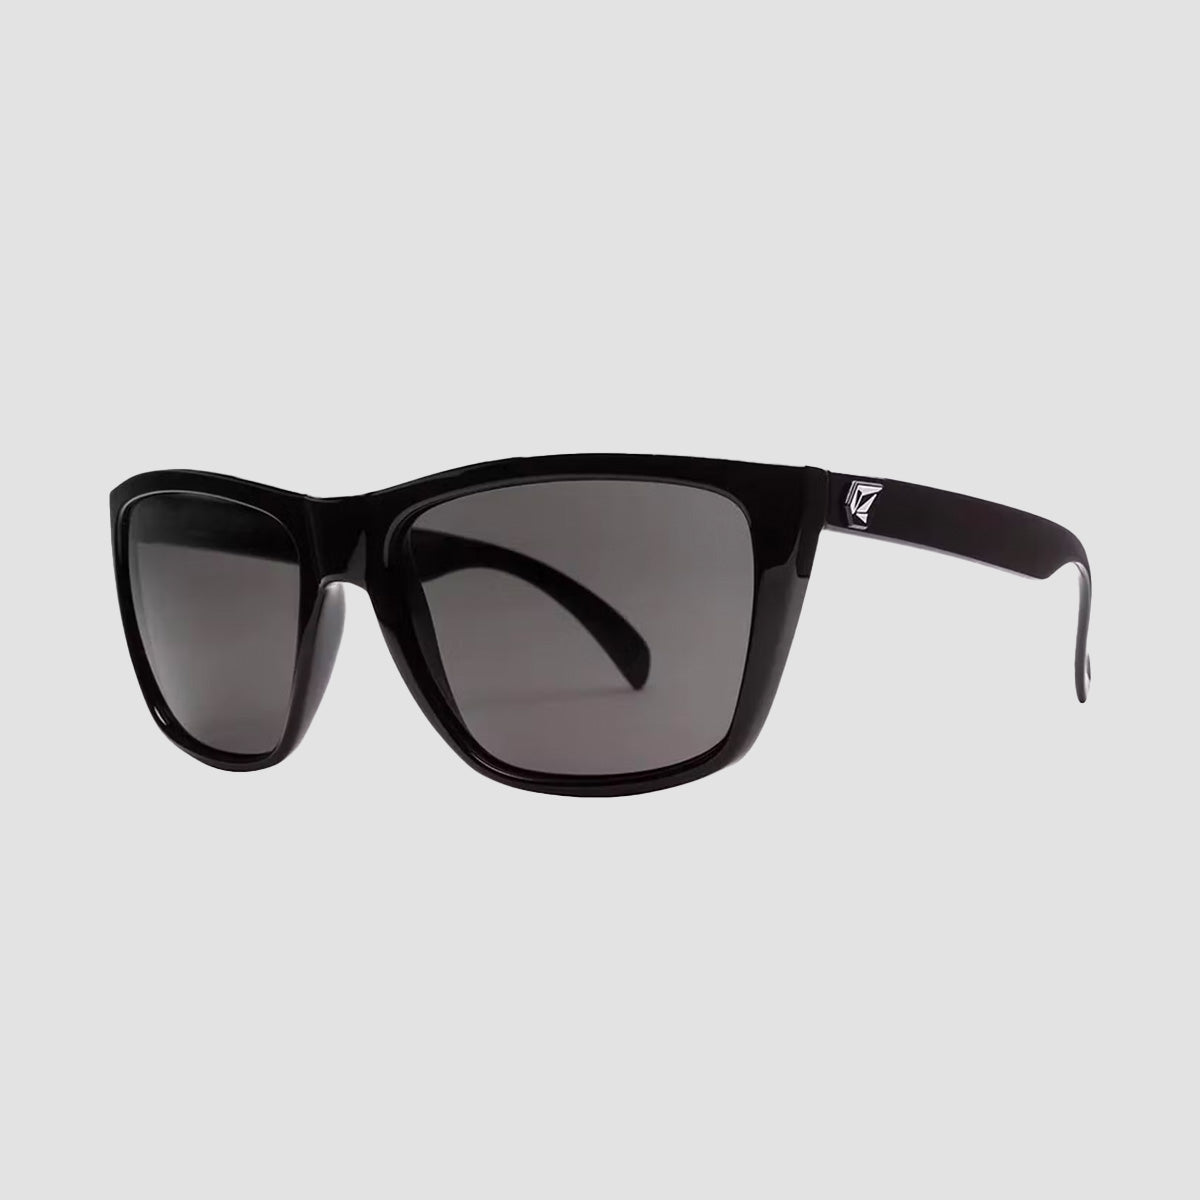 Volcom Palm Sunglasses Black/Grey